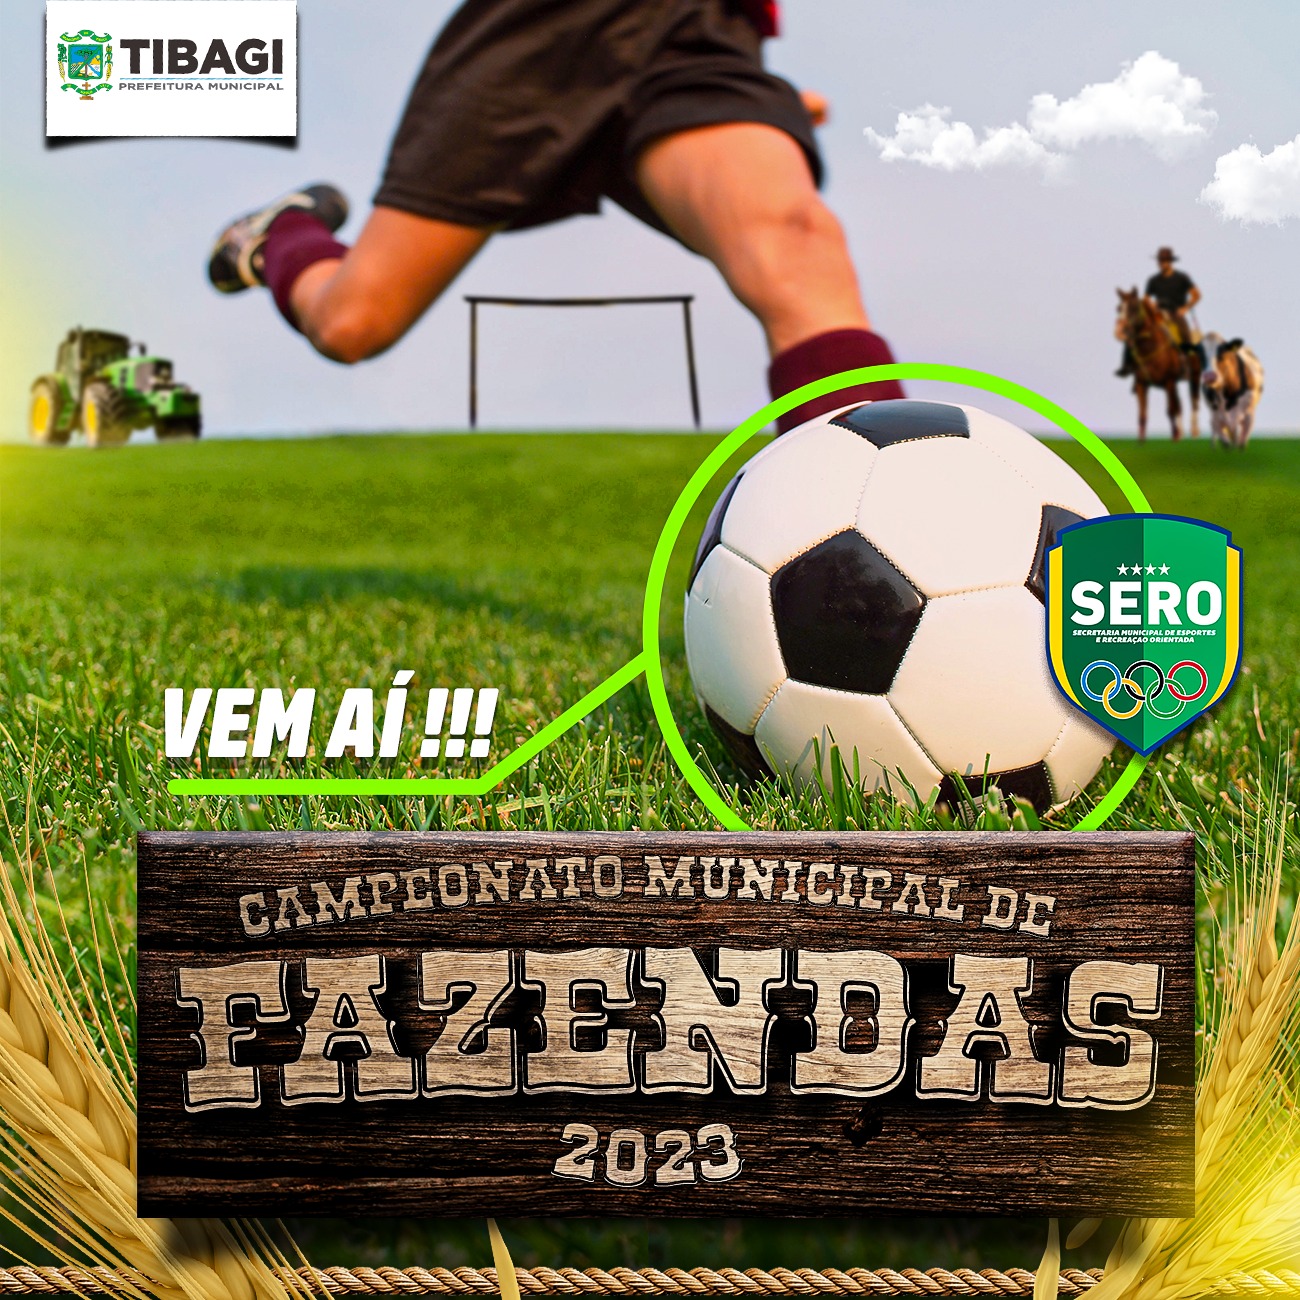 Esporte de Tibagi prorroga inscrições do Campeonato de Fazendas 2023